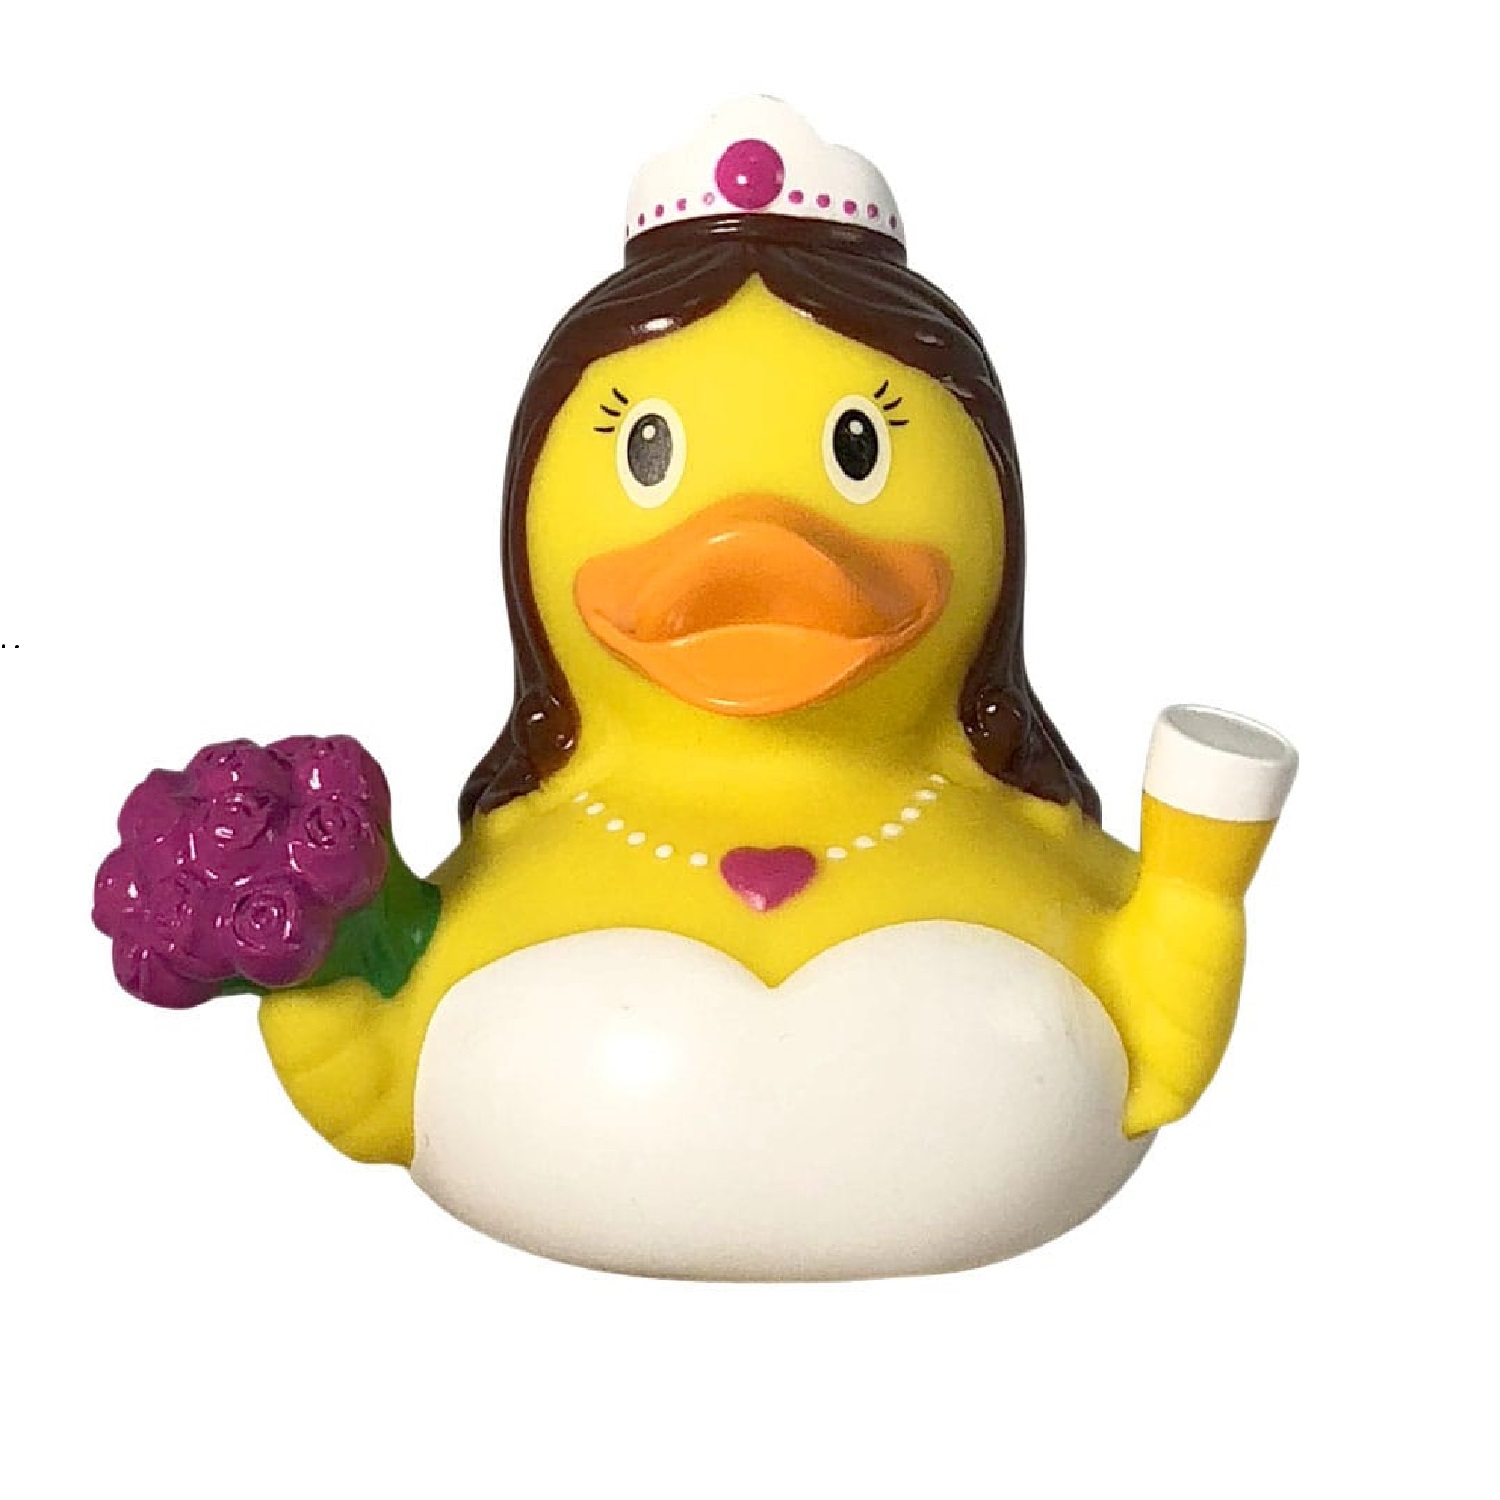 Игрушка Funny ducks для ванной Невеста уточка 1968 - фото 2